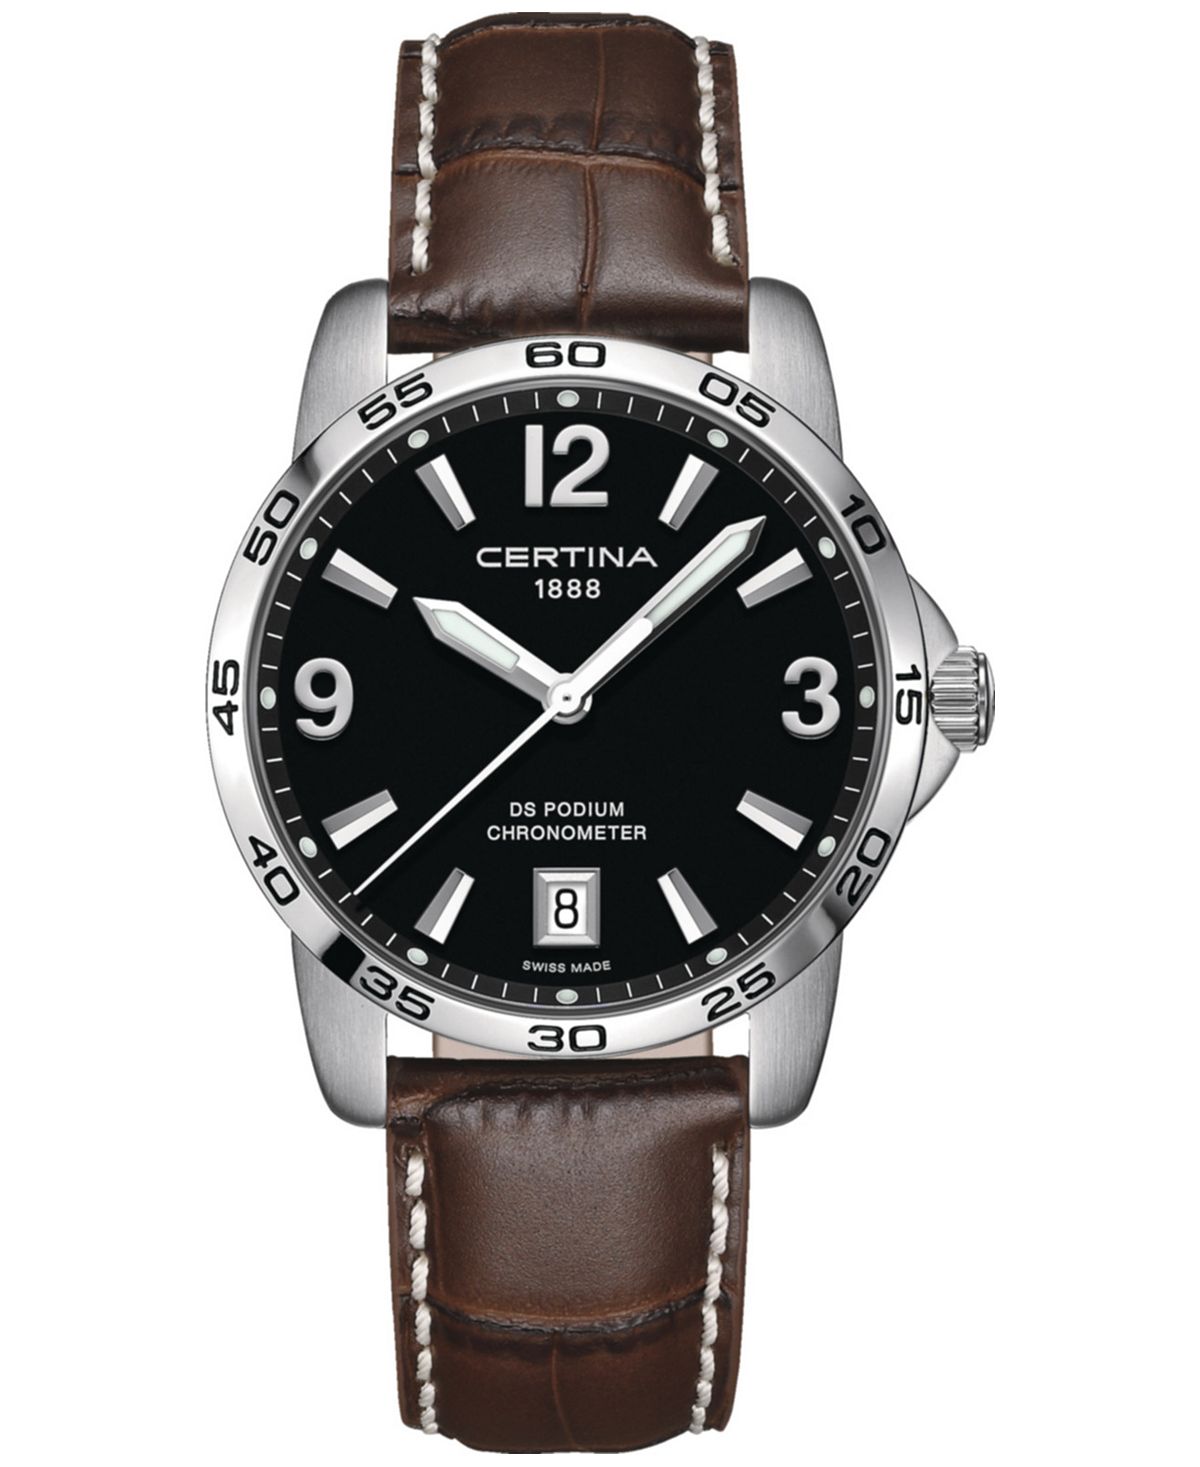 Мужские швейцарские часы DS Podium с коричневым кожаным ремешком, 40 мм Certina часы certina ds stella c031 210 11 031 00